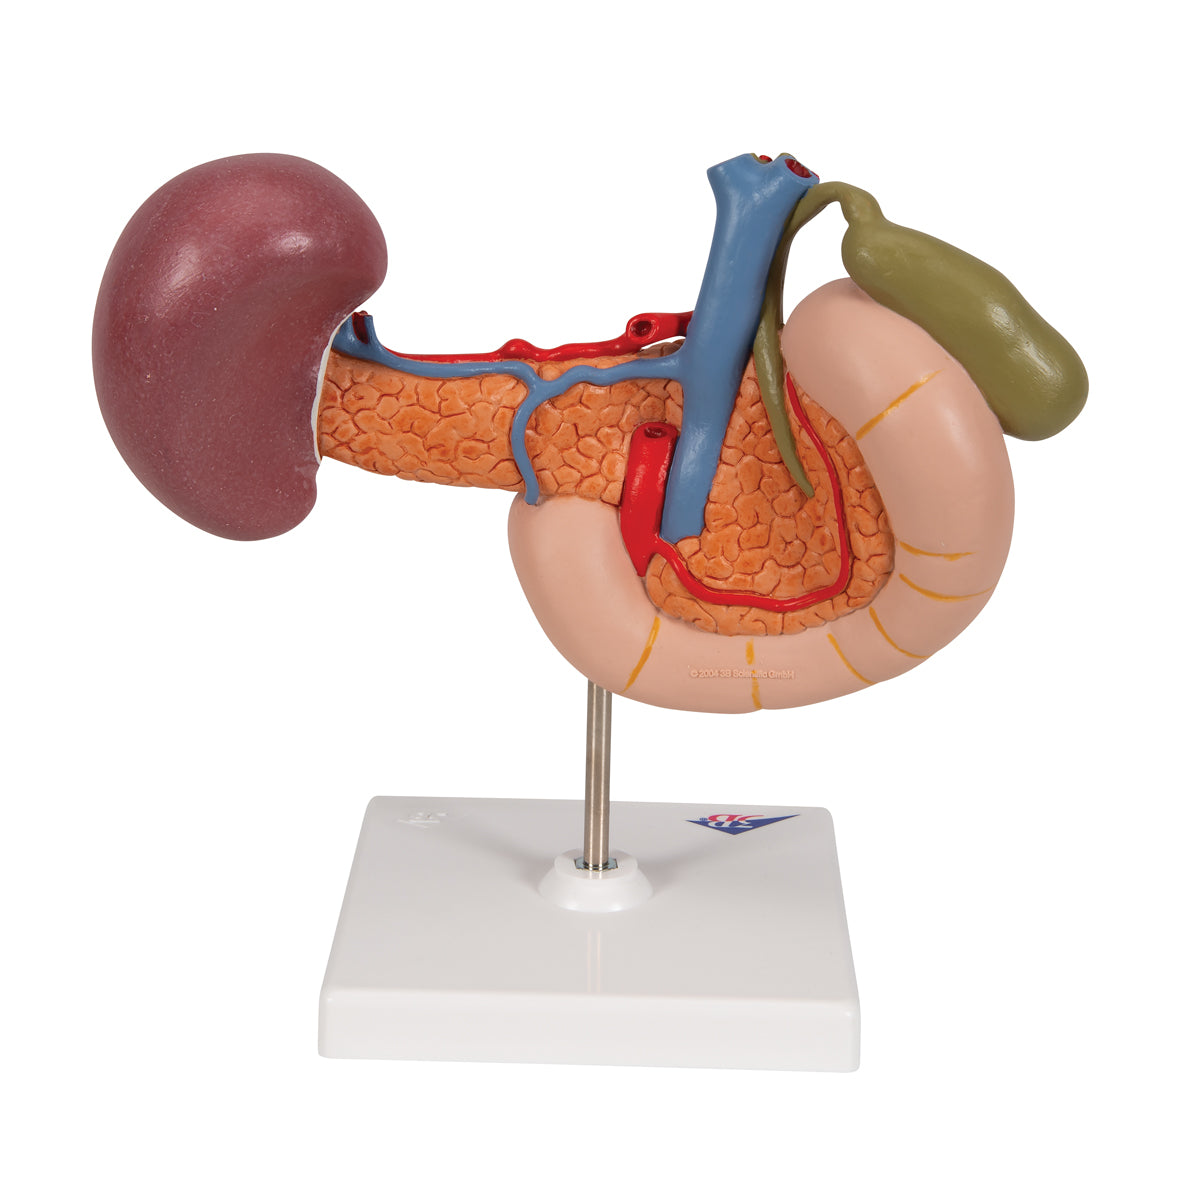 Model af tolvfingertarmen og bugspytkirtlens relationer til andre organer